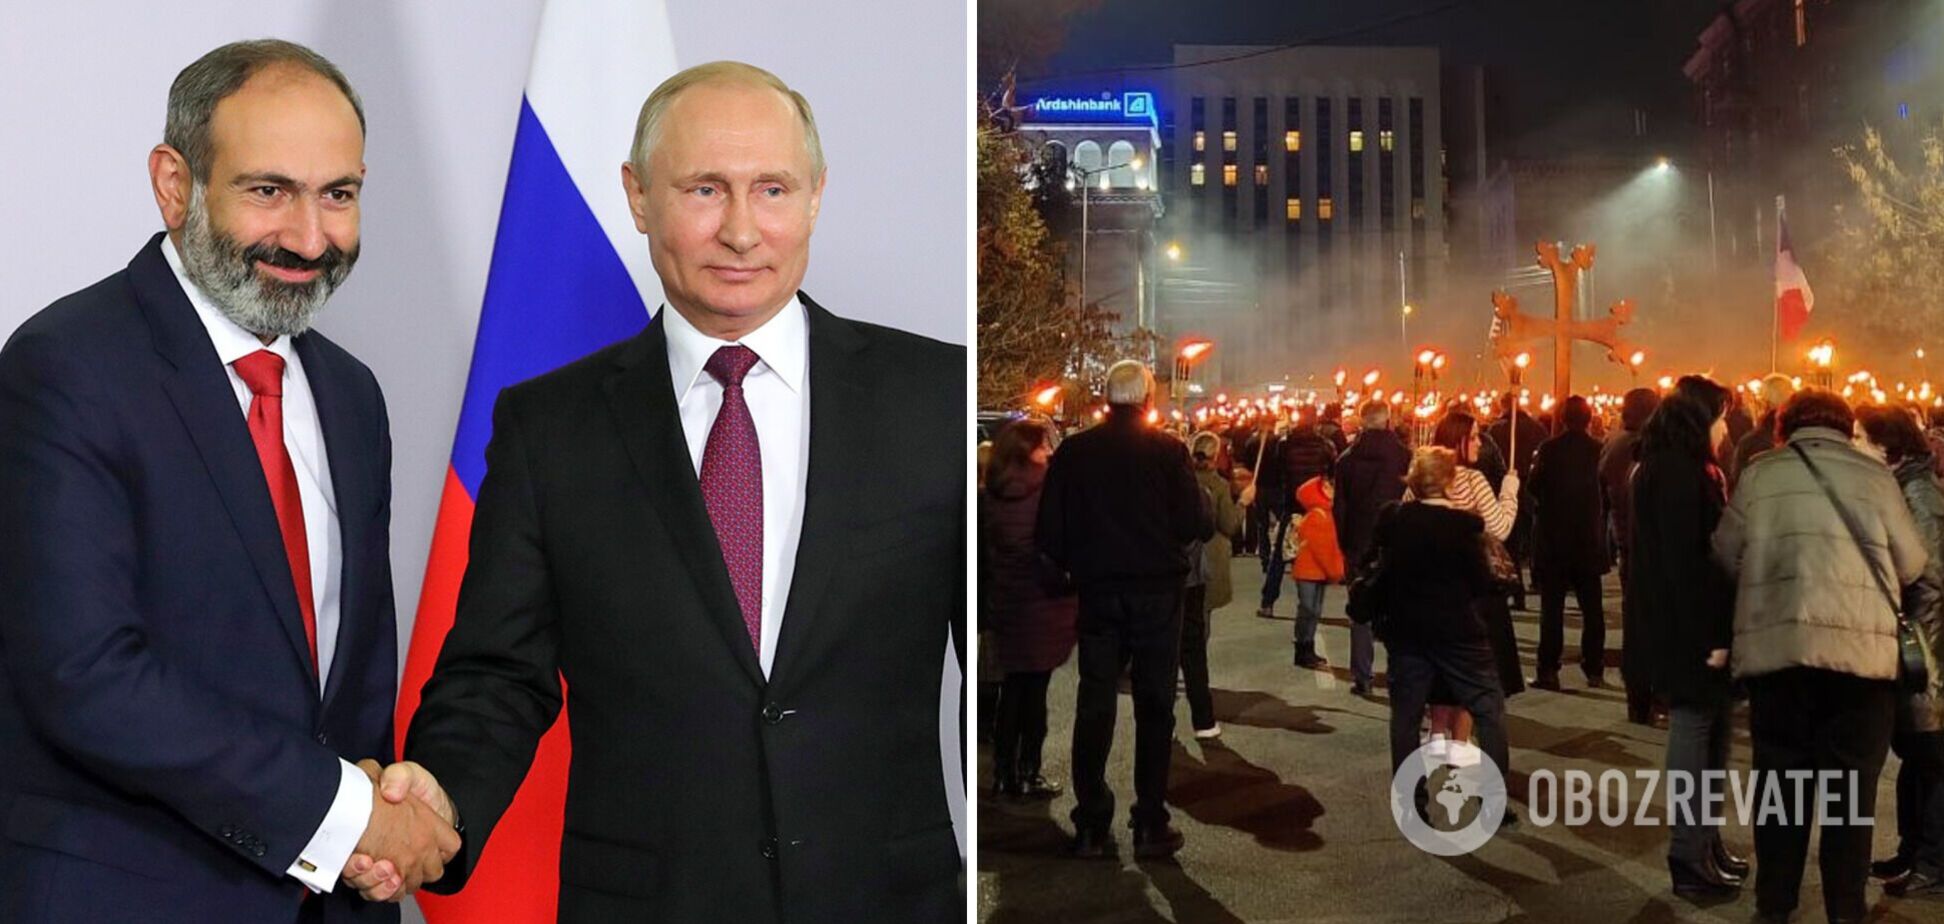 Обвиняли Москву в предательстве: у посольства России в Ереване прошел антироссийский митинг. Фото и видео